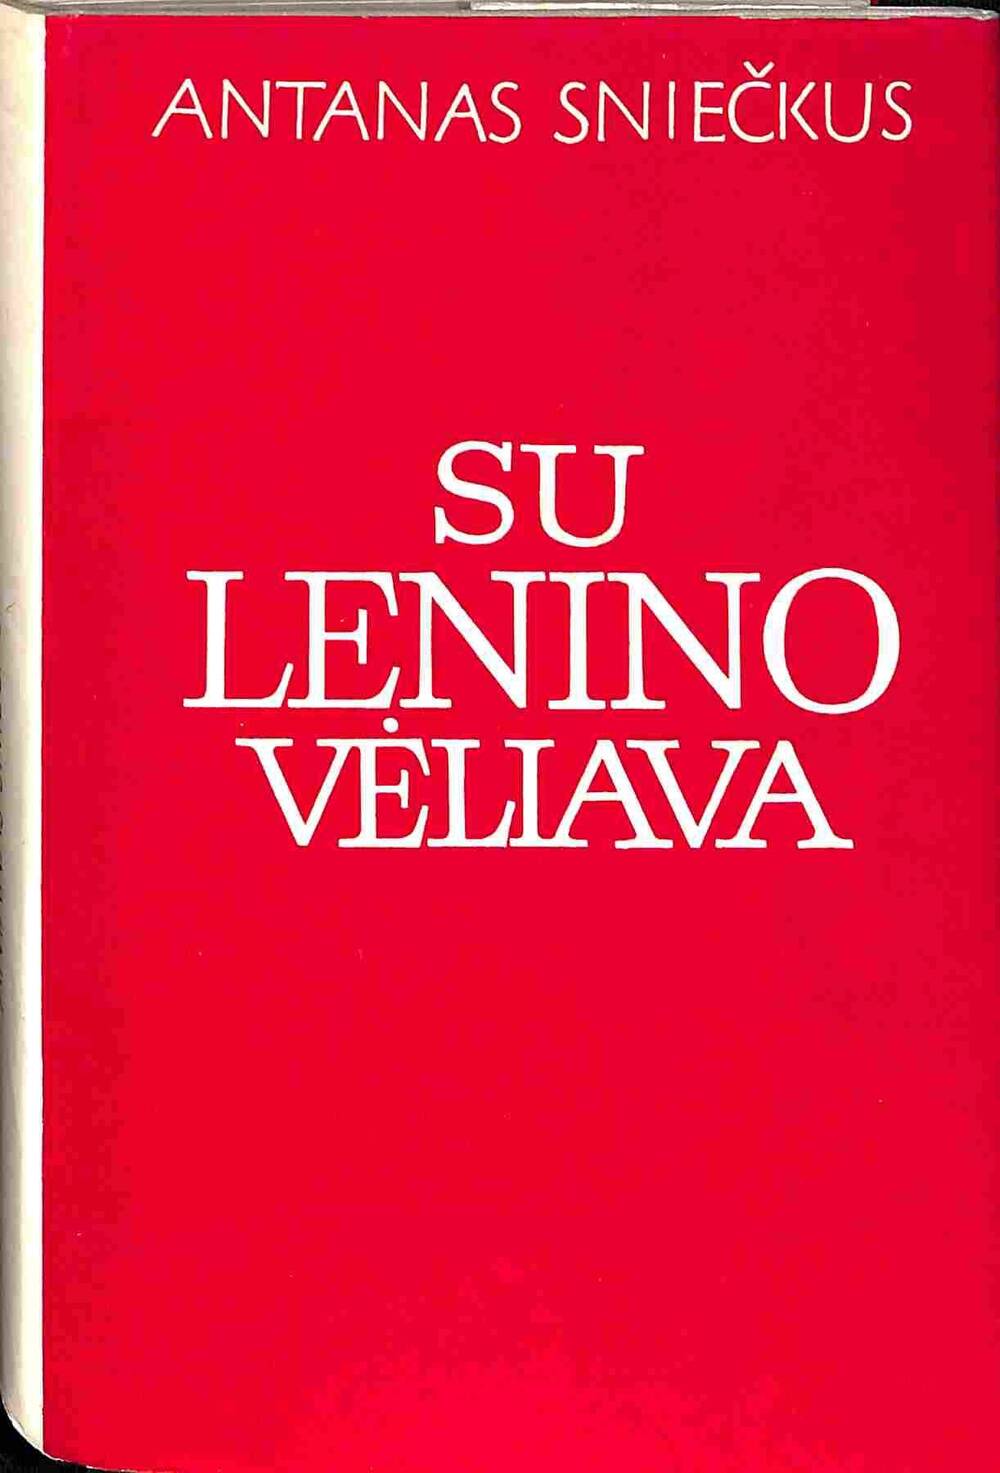 Книга на литовском языке в двух томах. Антанас Сниекус. Под знаменем Ленина. 1977 год